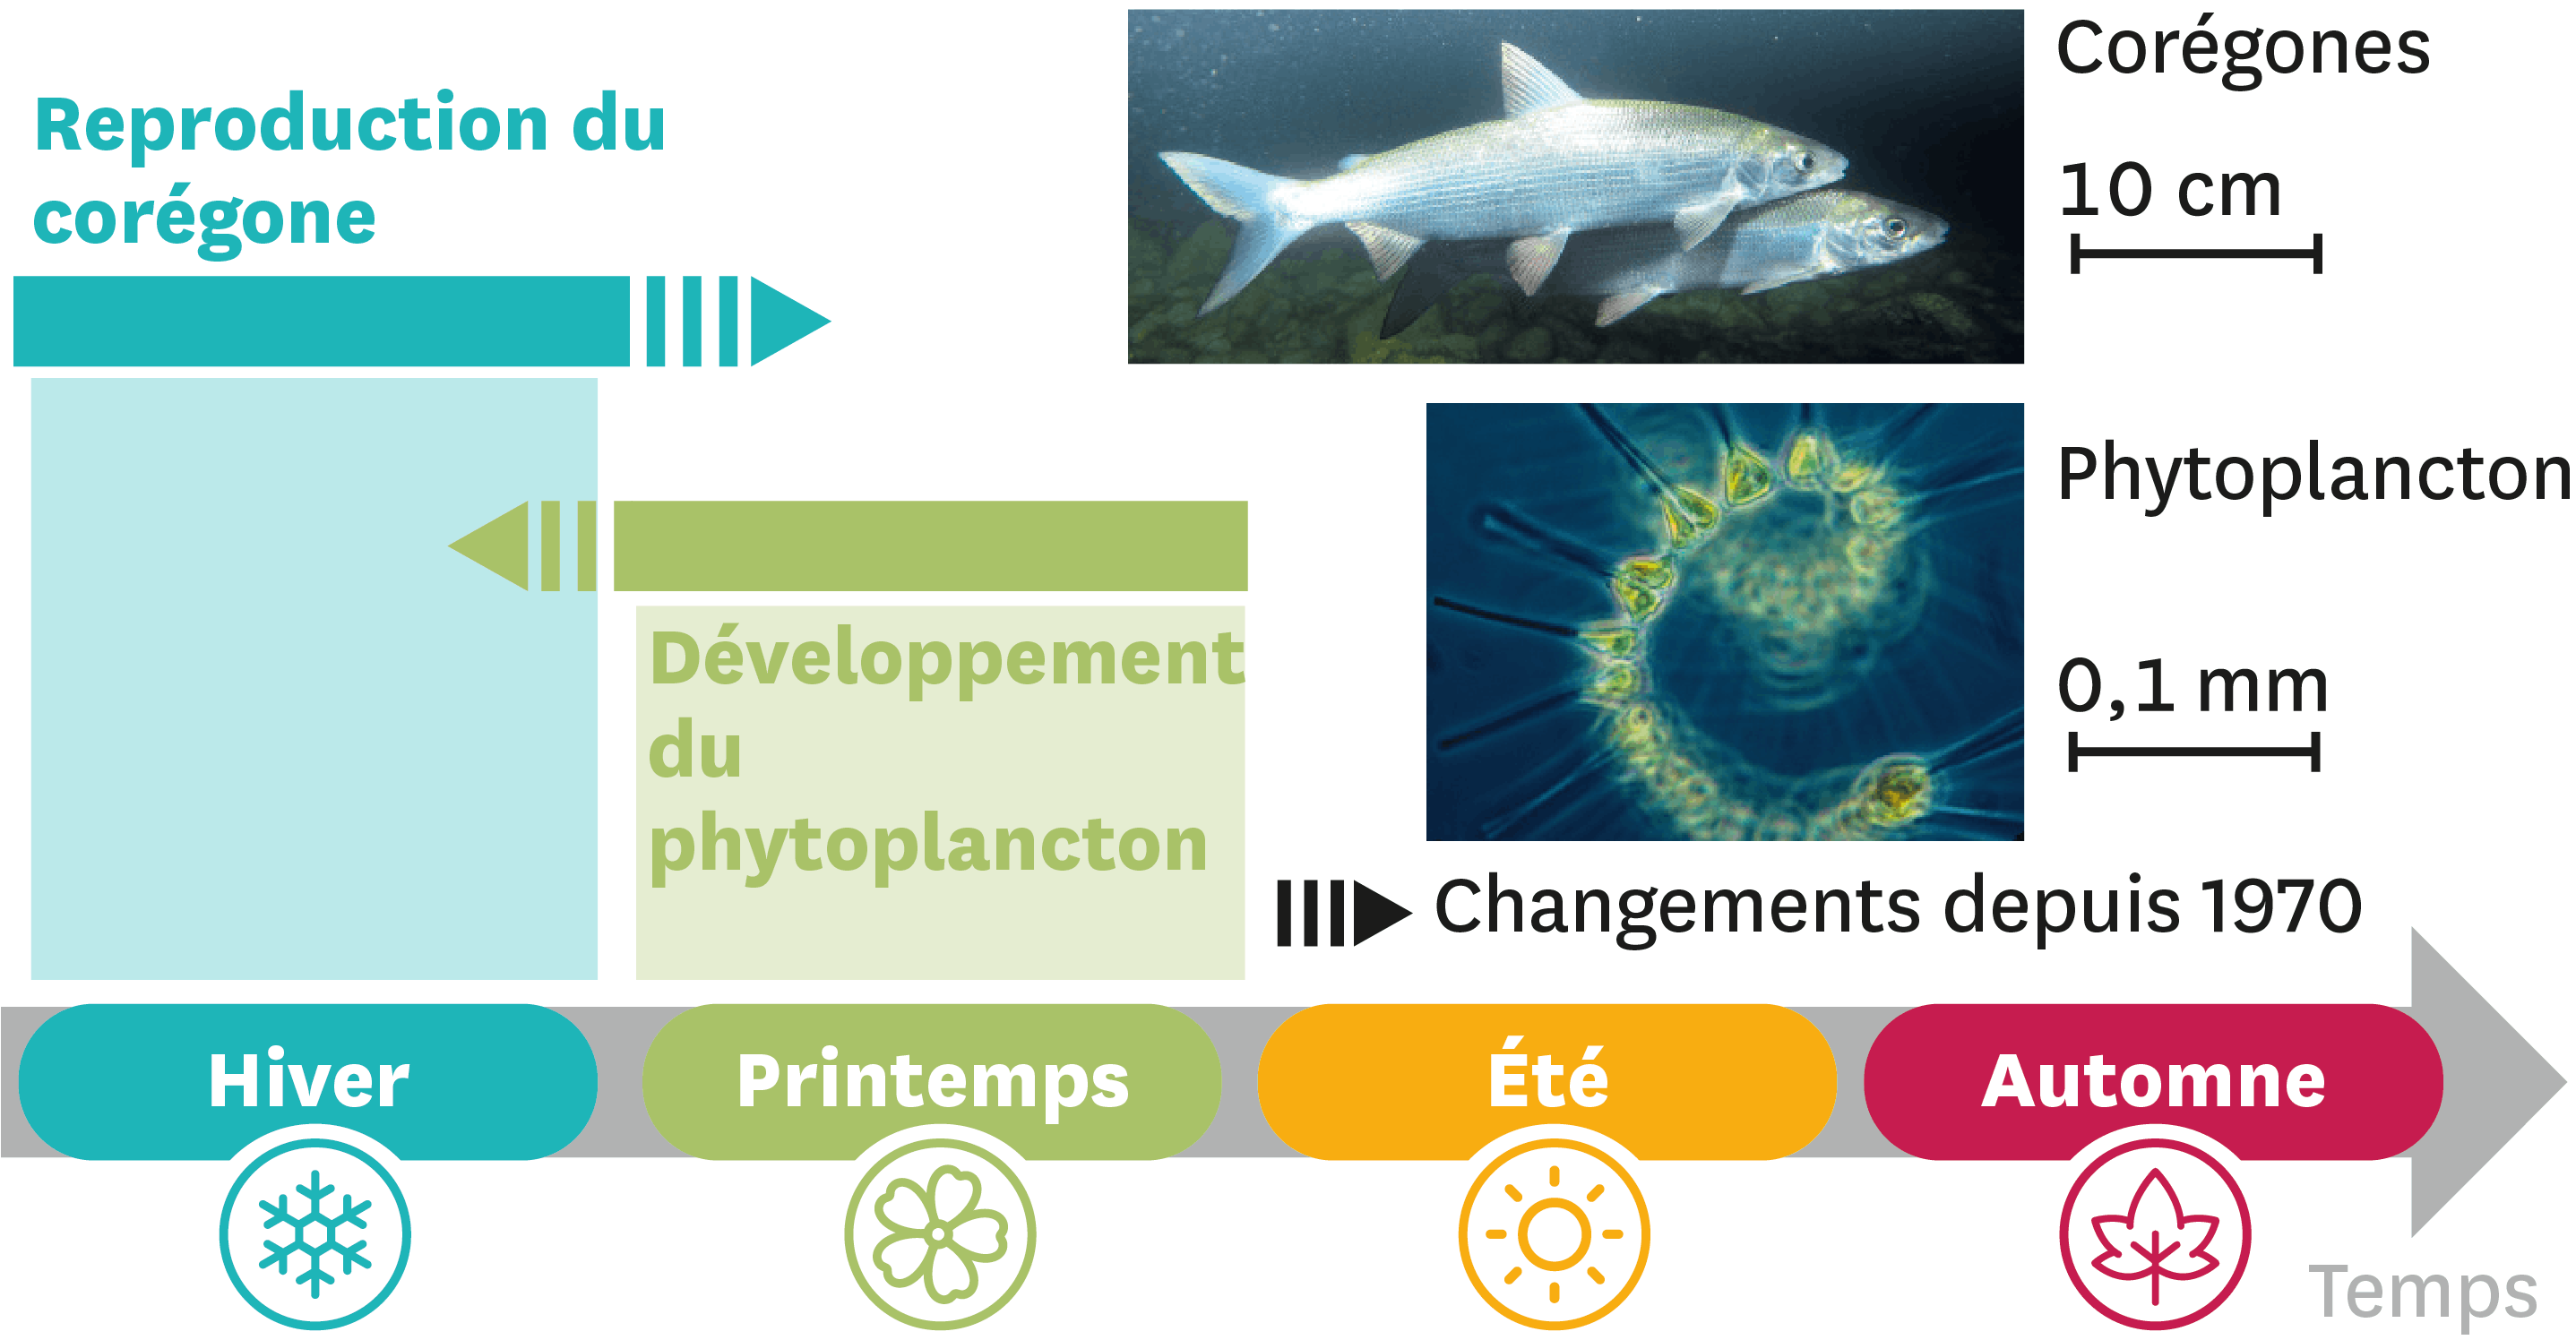 <stamp theme='svt-green1'>Doc. 4</stamp> Les périodes de reproduction du corégone et de développement du phytoplancton.